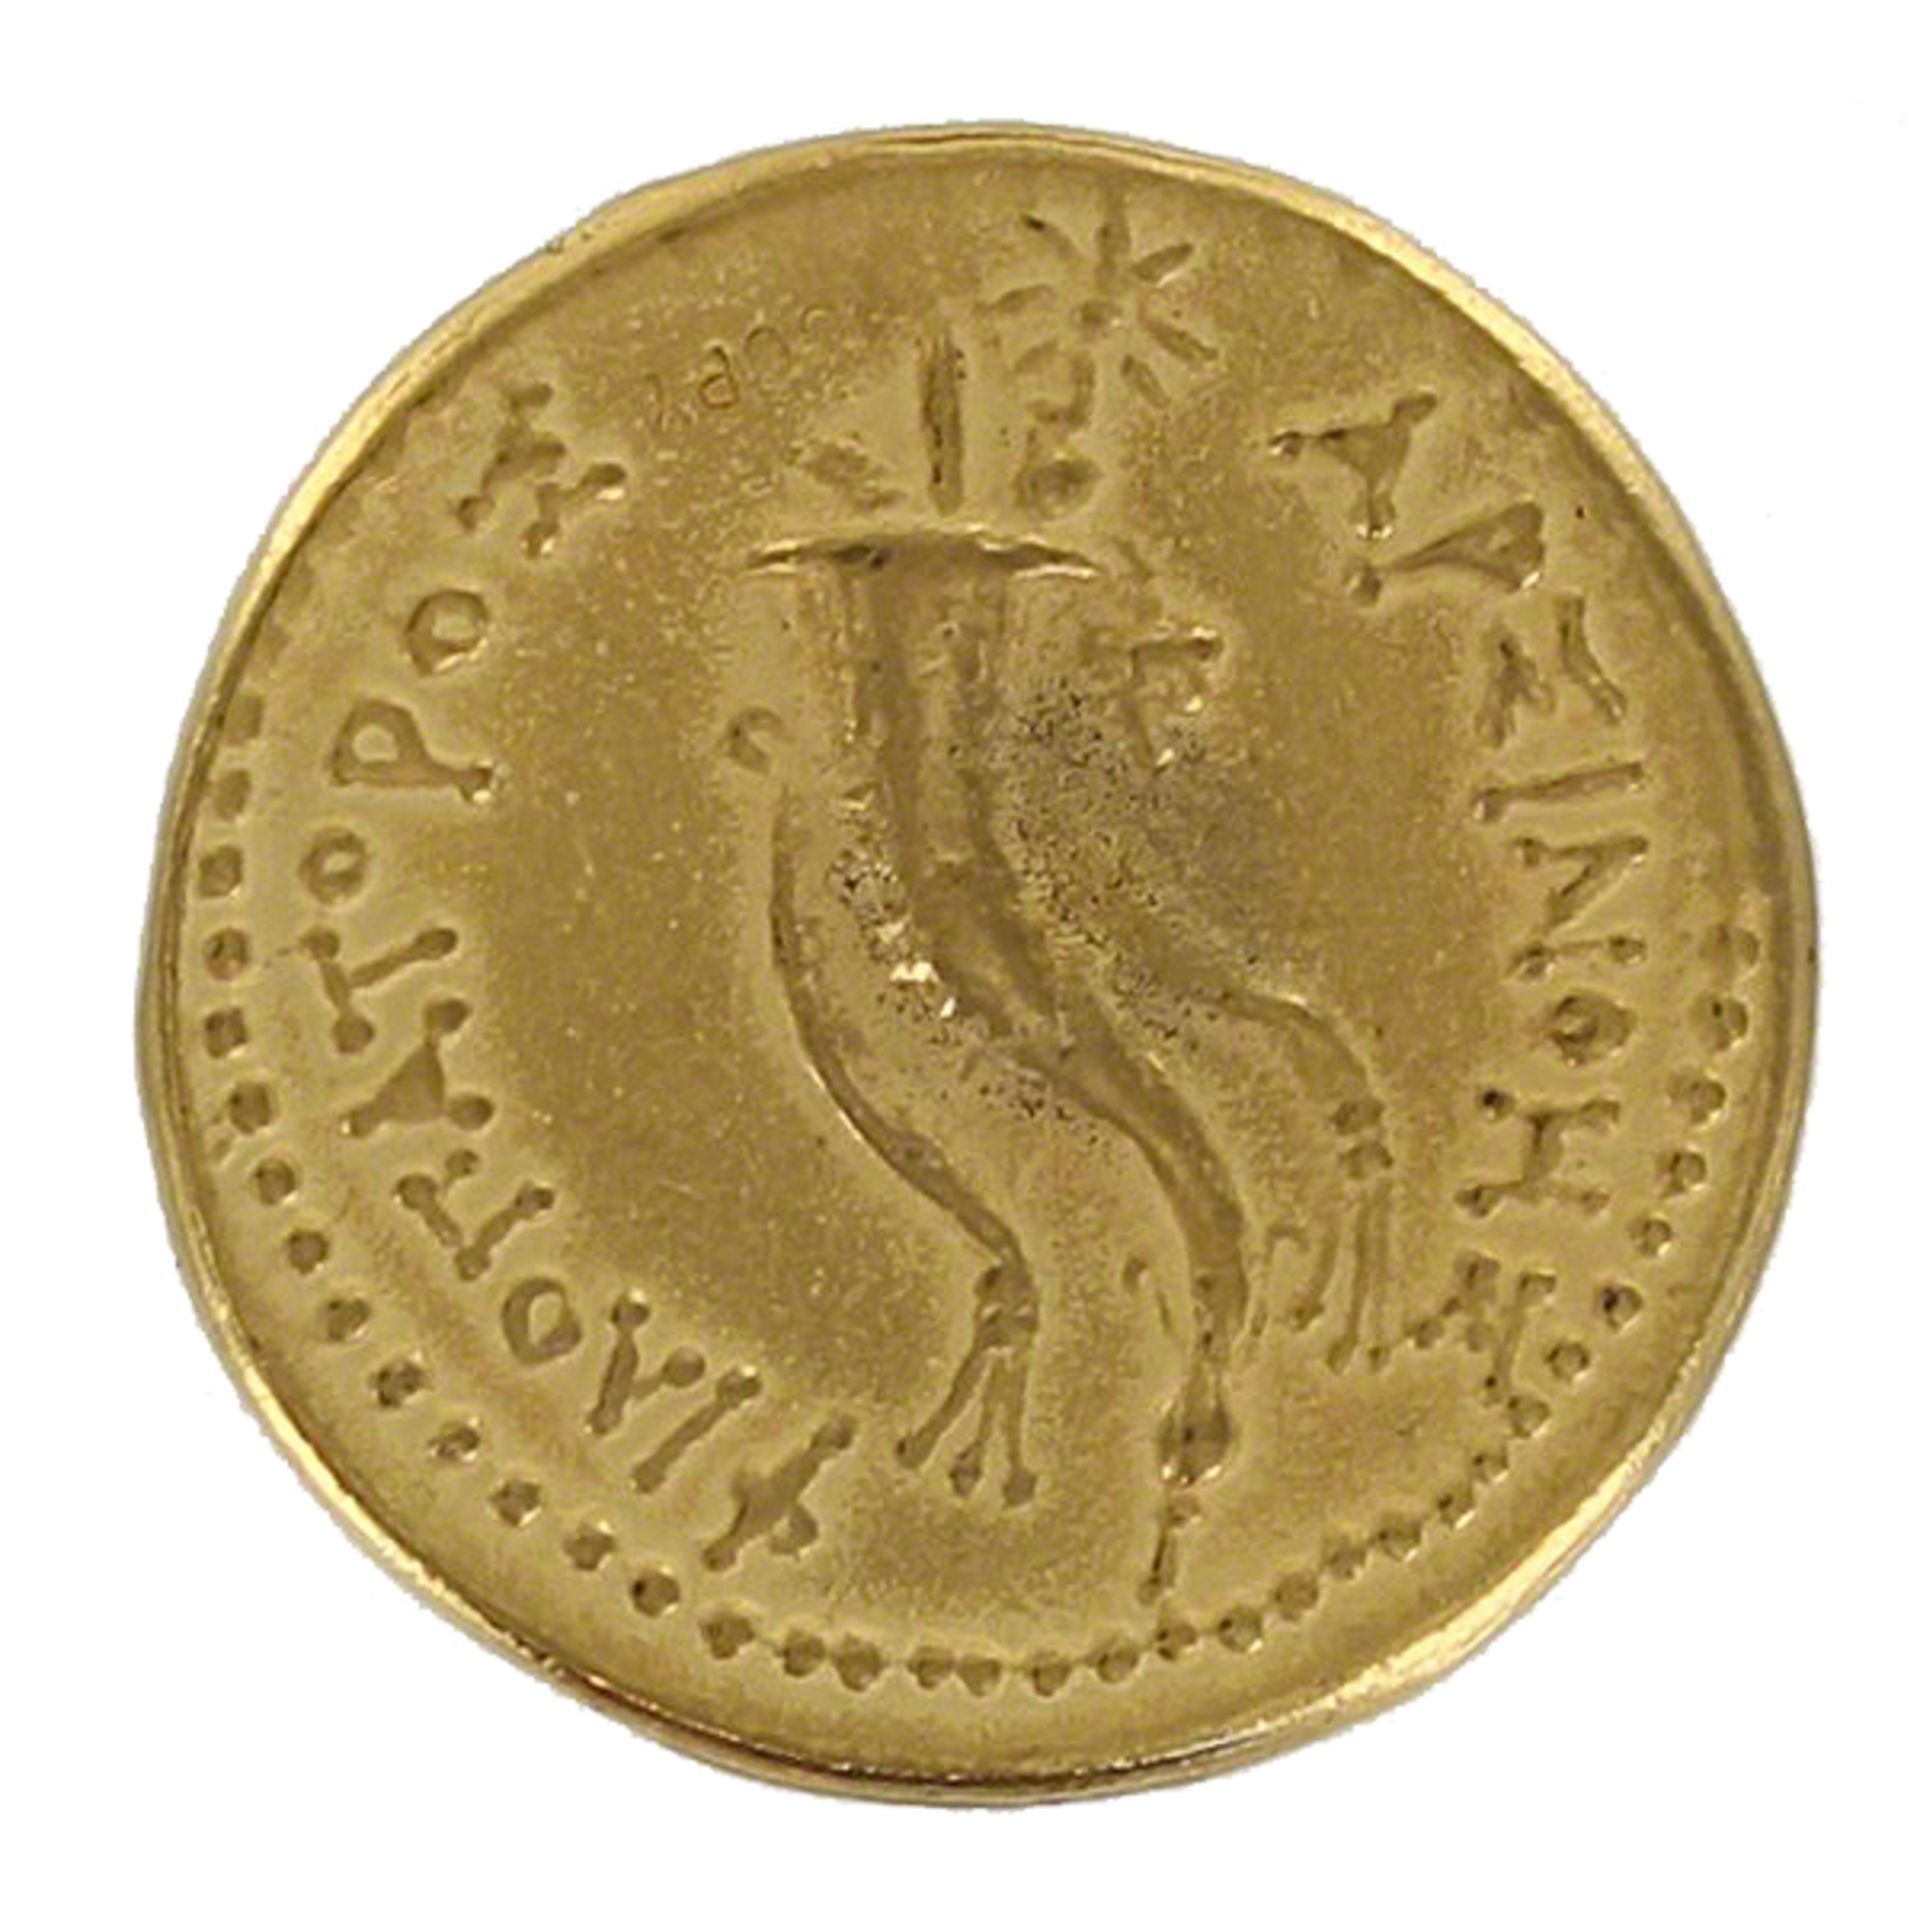 Arsinoe III Octadrachm 246 BC Coin - Image 2 of 2